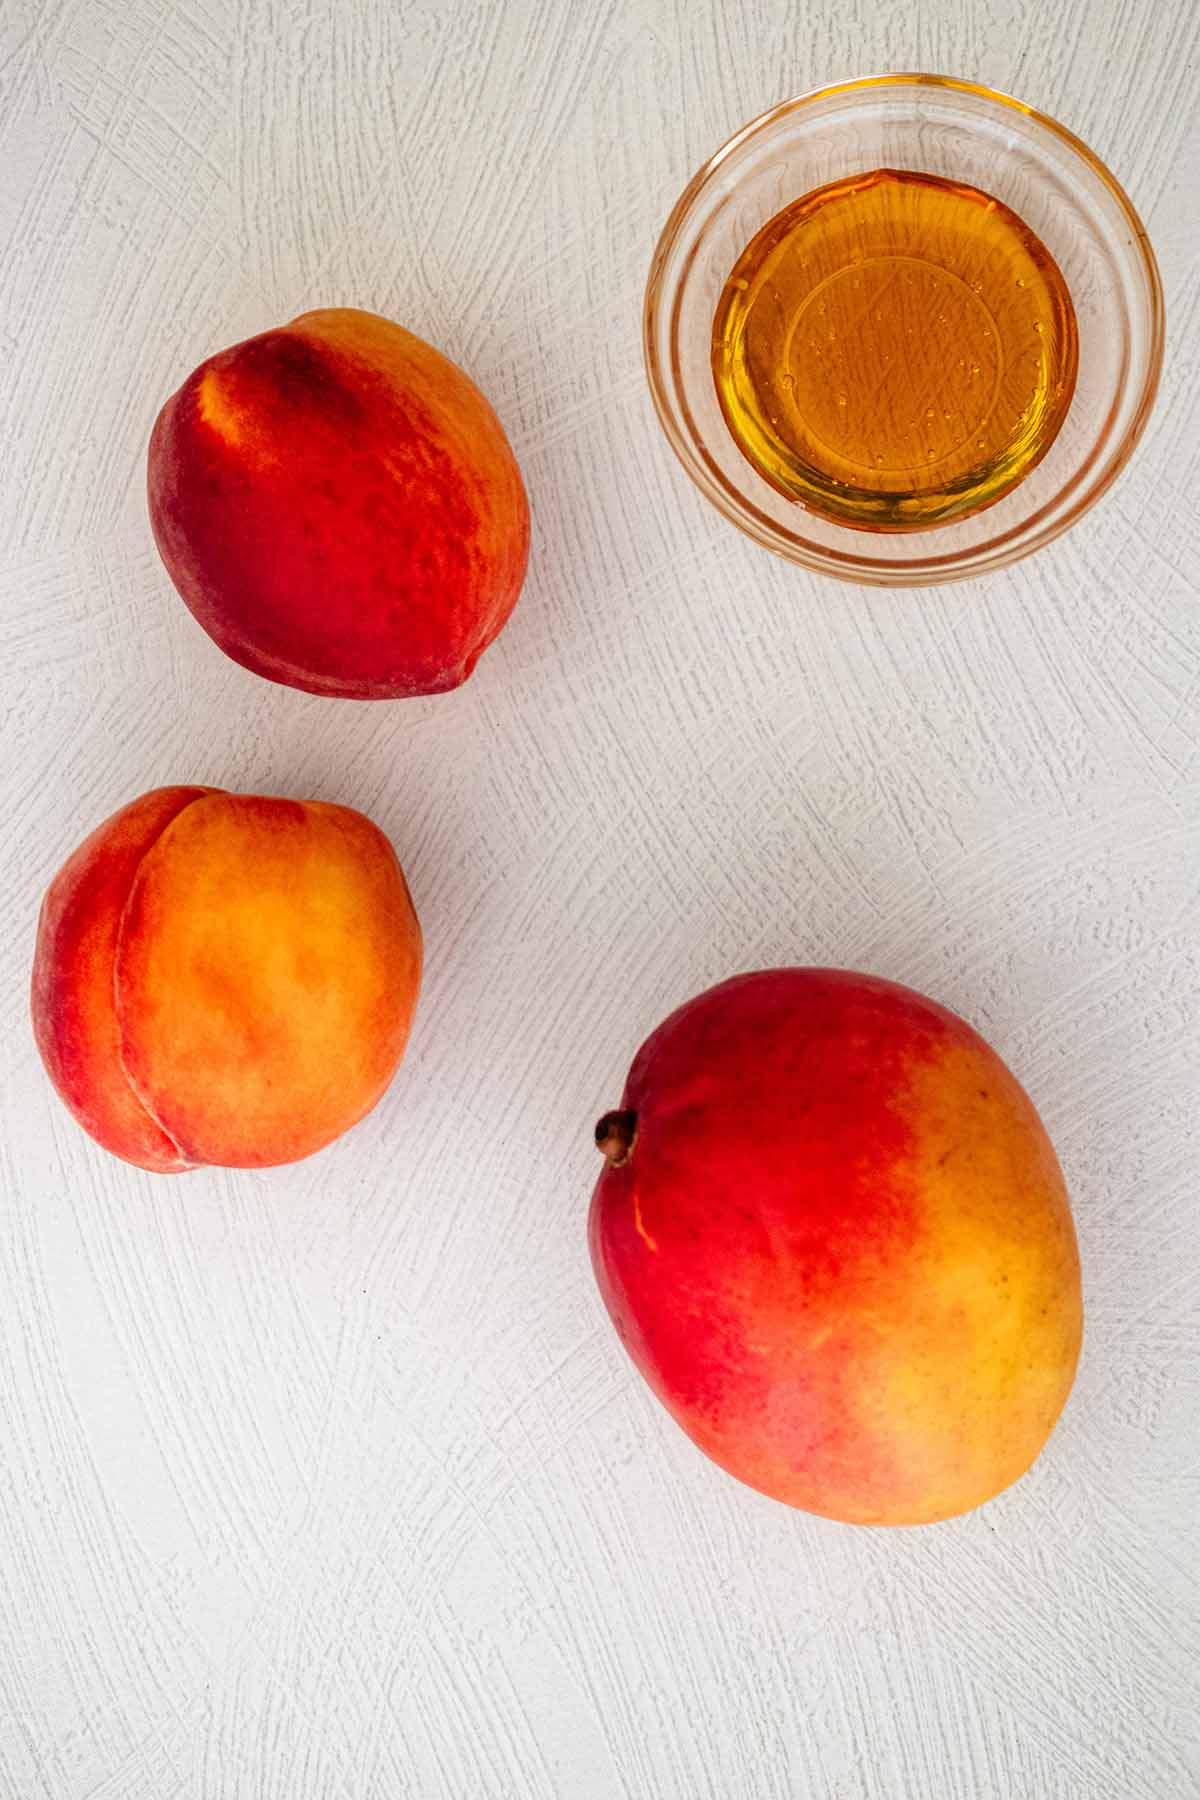 Peach juice ingredients